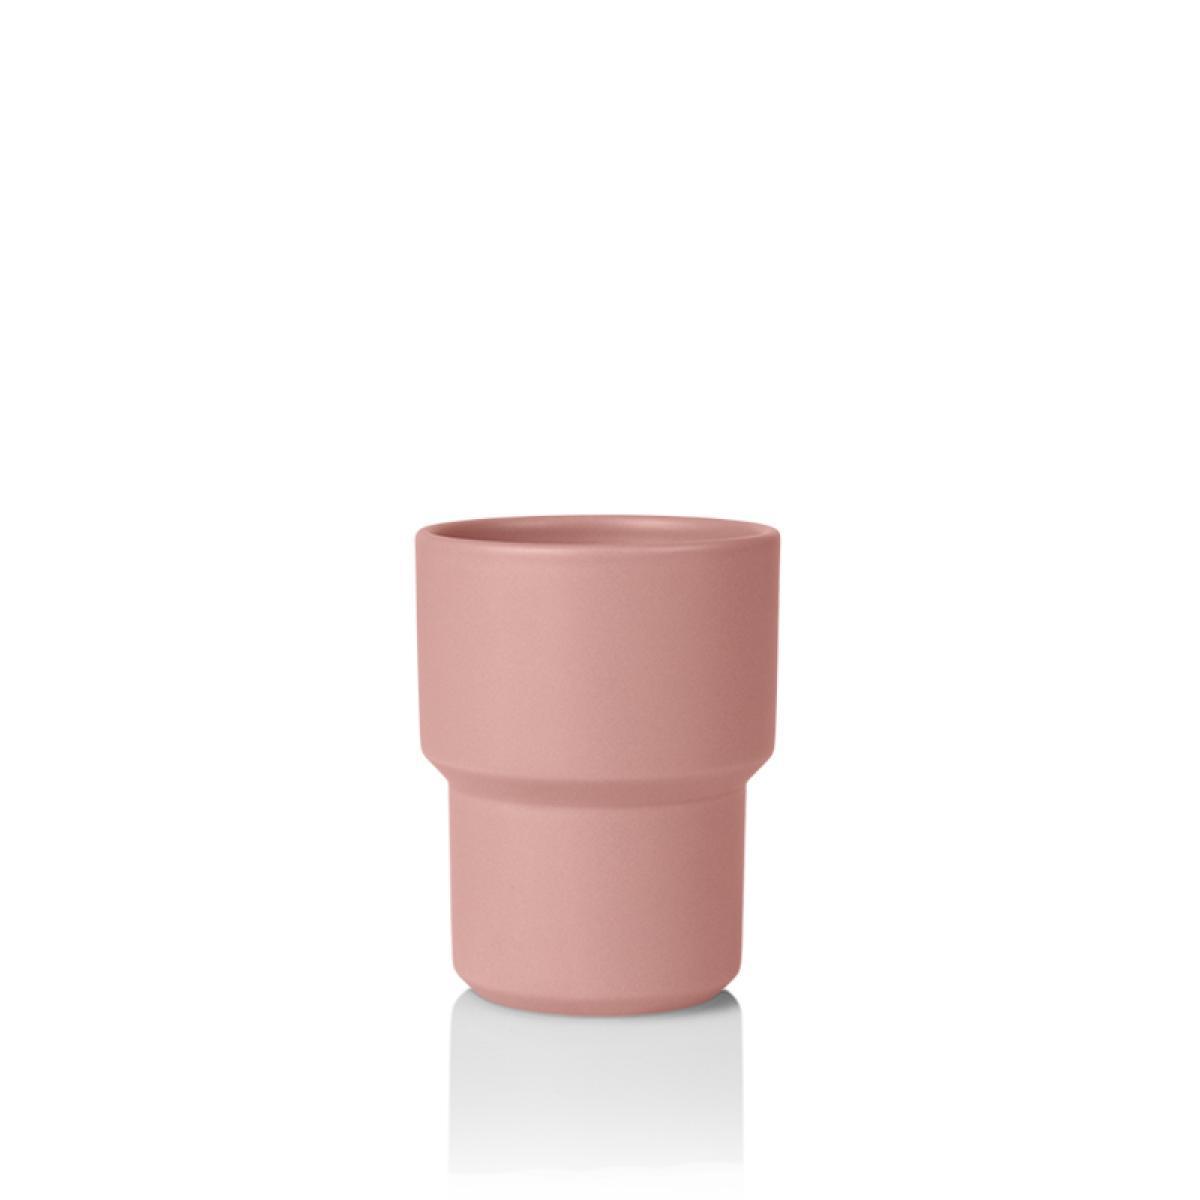 Lucie Kaas Fumario mug roze, 10 cm